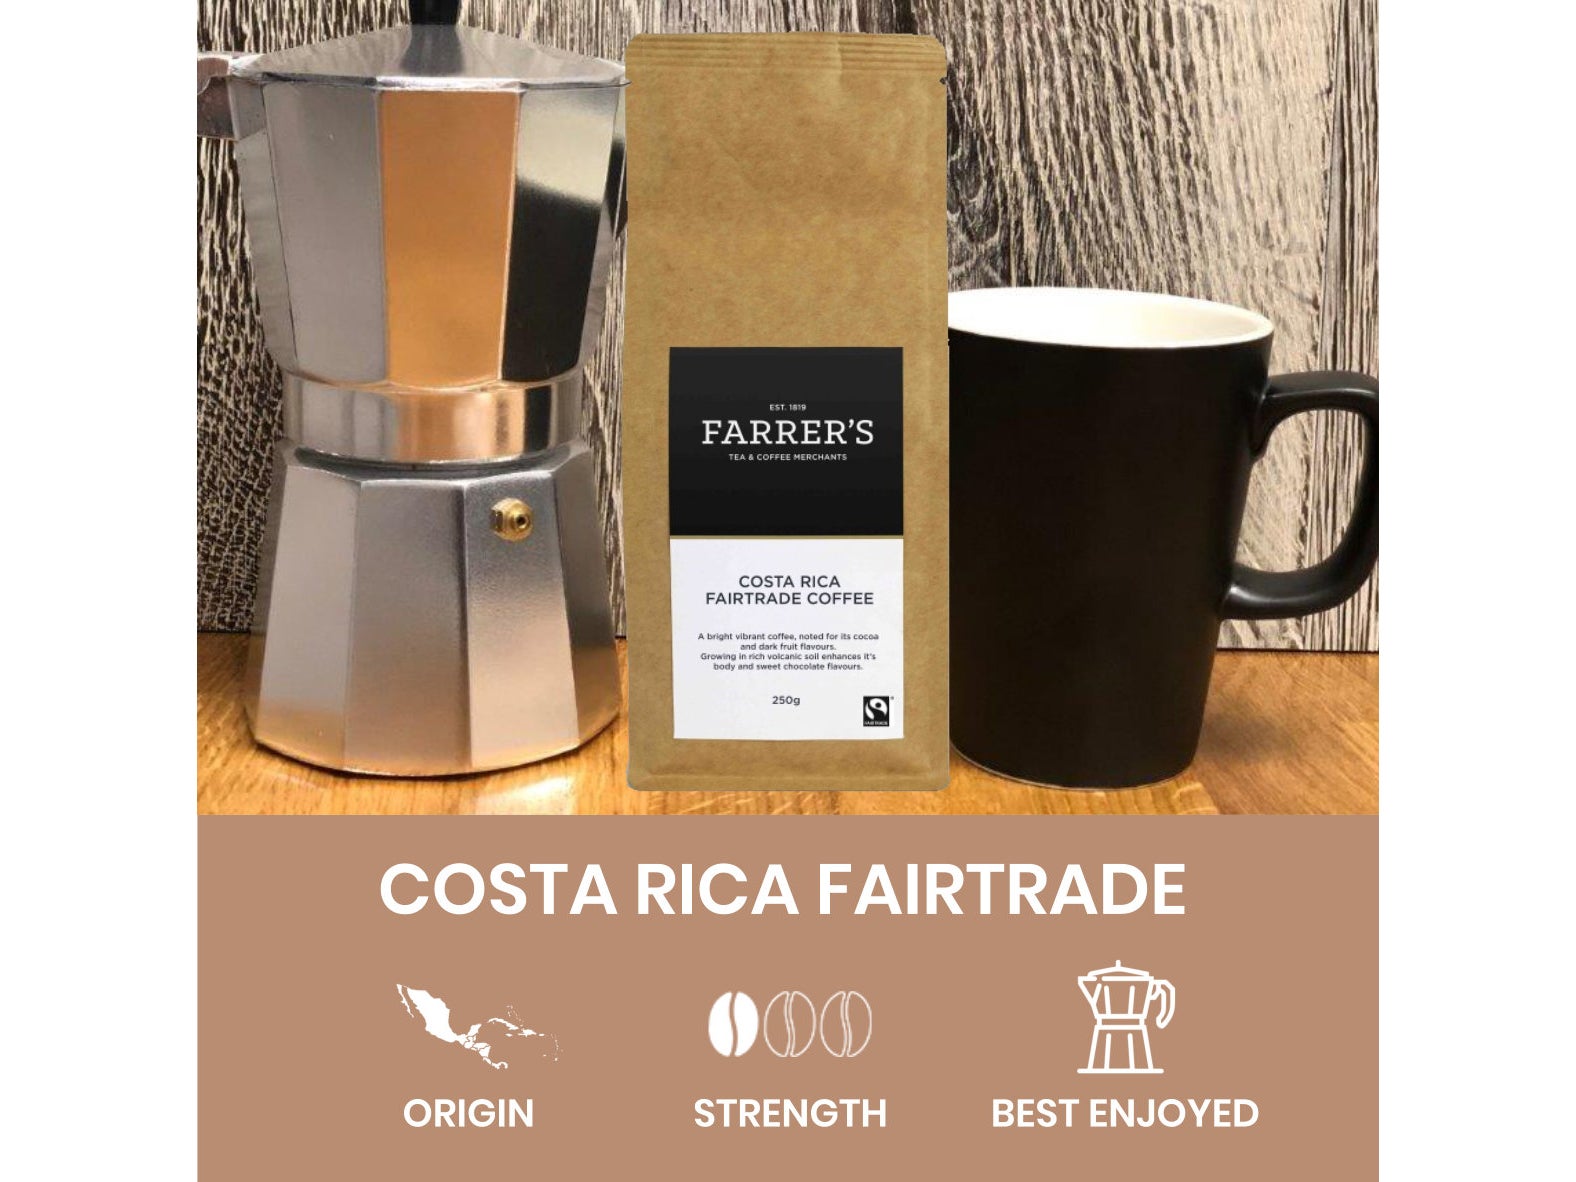 Costa-rica-fairtrade.jpg